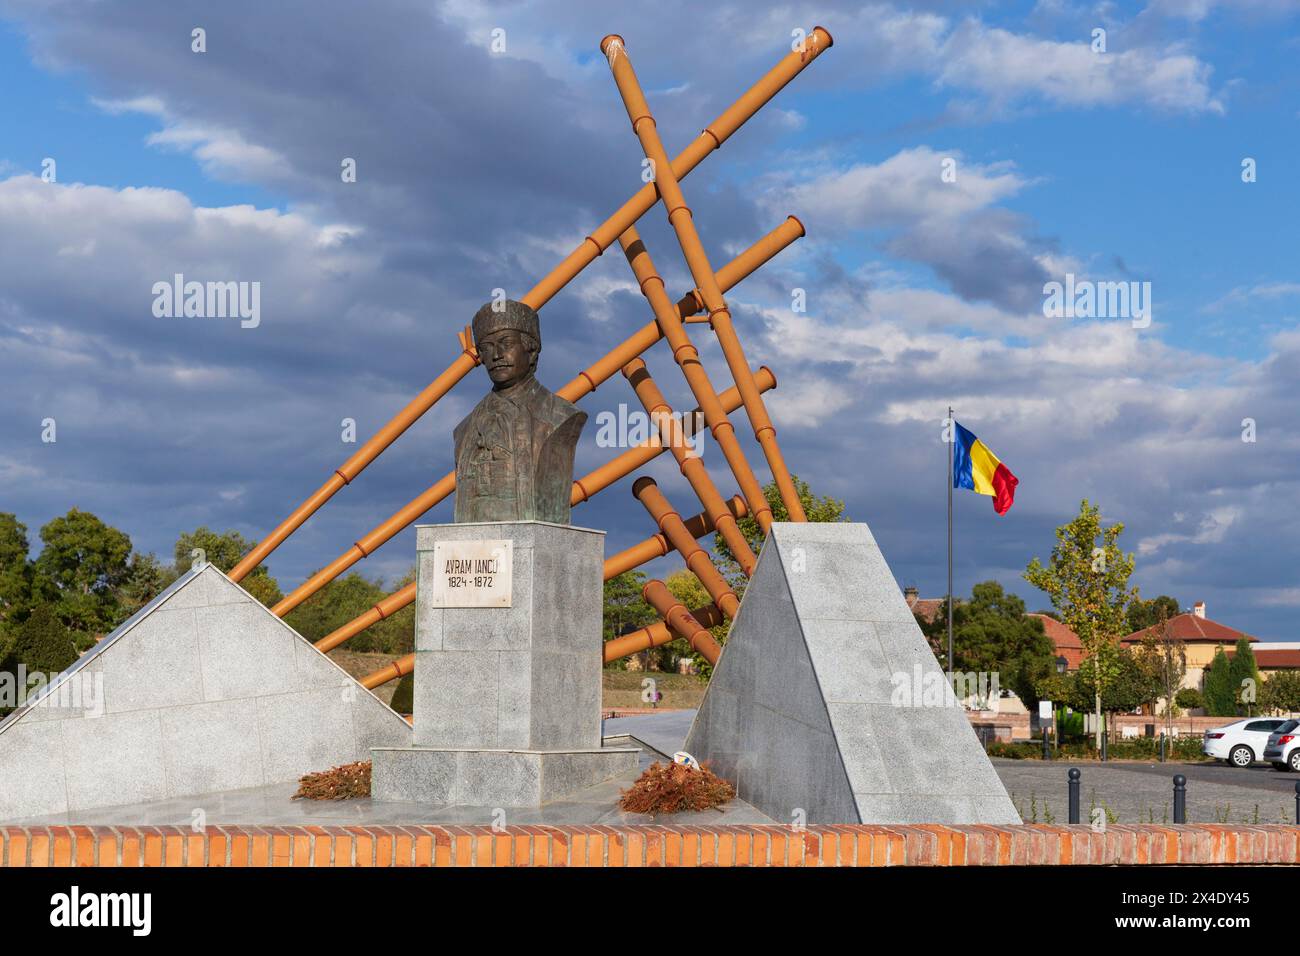 Romania, Alba. Statua di Avram Iancu, un avvocato rumeno della Transilvania che ha svolto un ruolo importante nelle rivoluzioni dell'Impero austriaco 1848-1849. Foto Stock